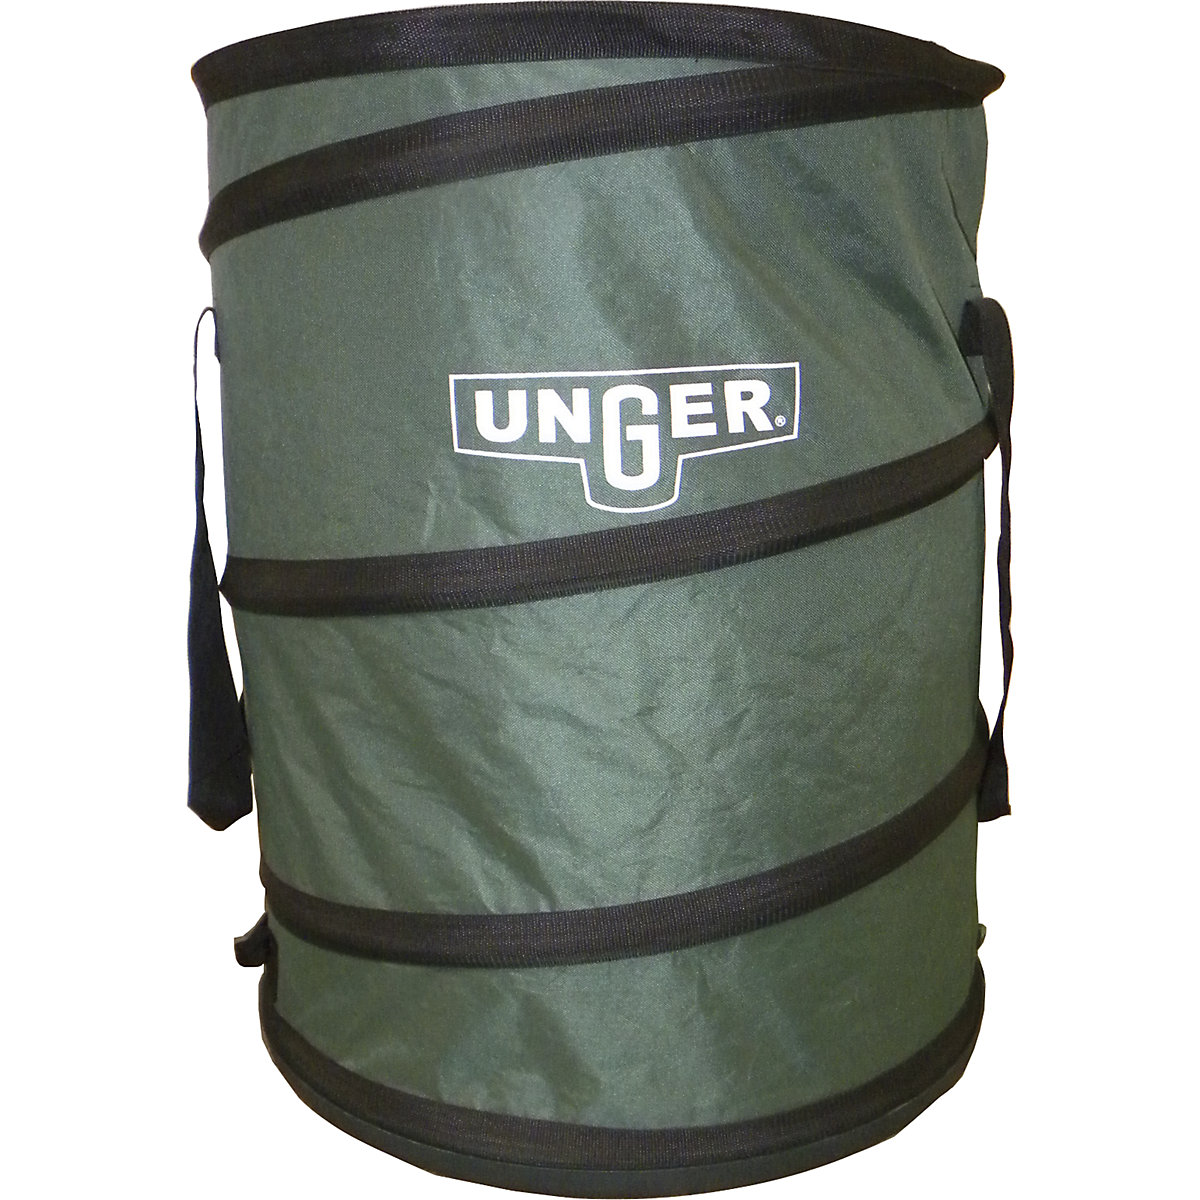 Pop-up garden sack – Unger